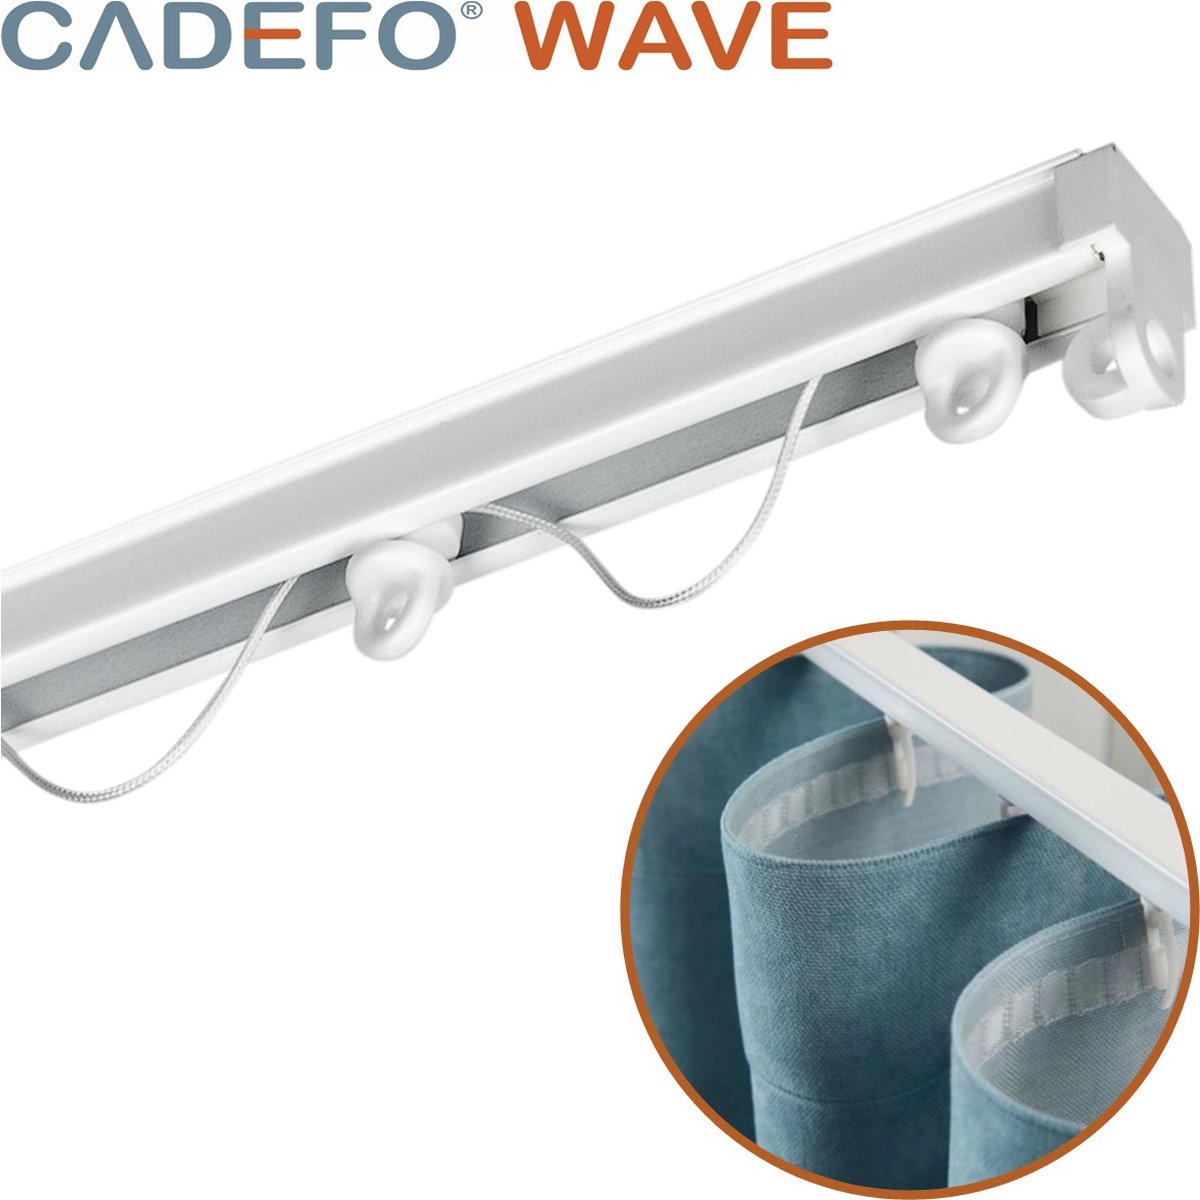 CADEFO WAVE (551 - 600 cm) Gordijnrails - Compleet op maat! - UIT 1 STUK - Leverbaar tot 6 meter - Plafondbevestiging - Lengte 578 cm